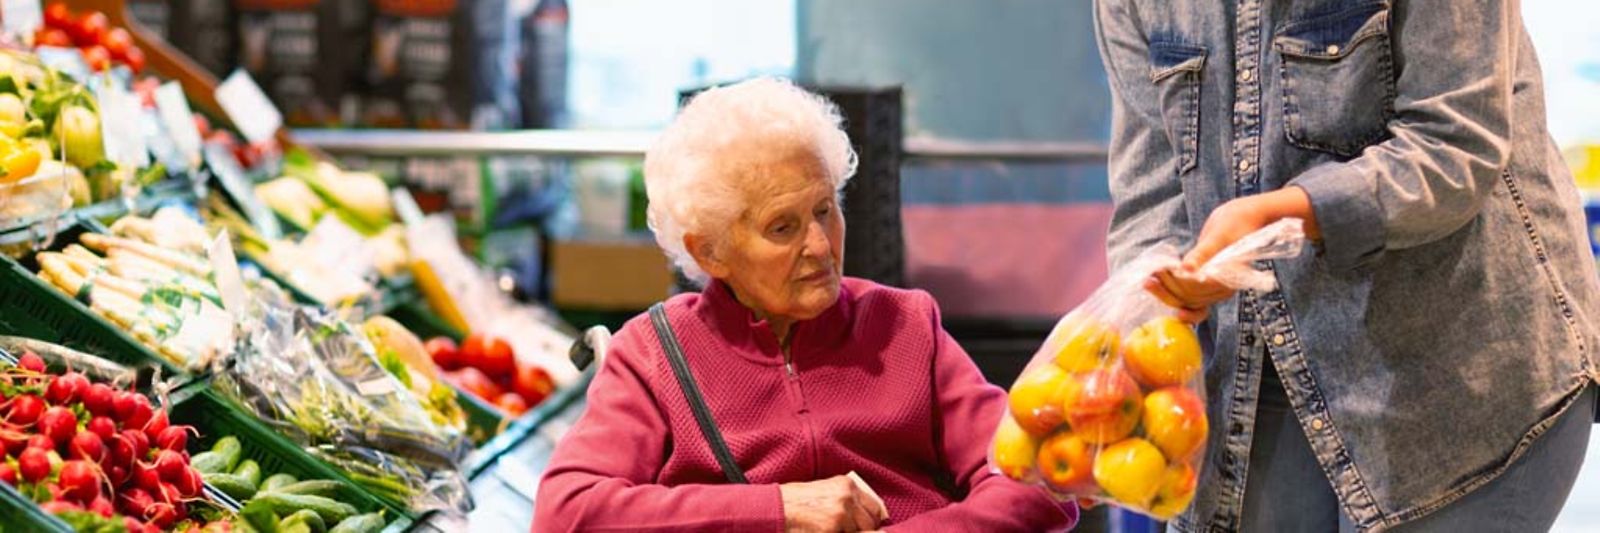 Eine junge Frau zeigt einer älteren Dame beim Einkauf eine Tüte mit Äpfeln.